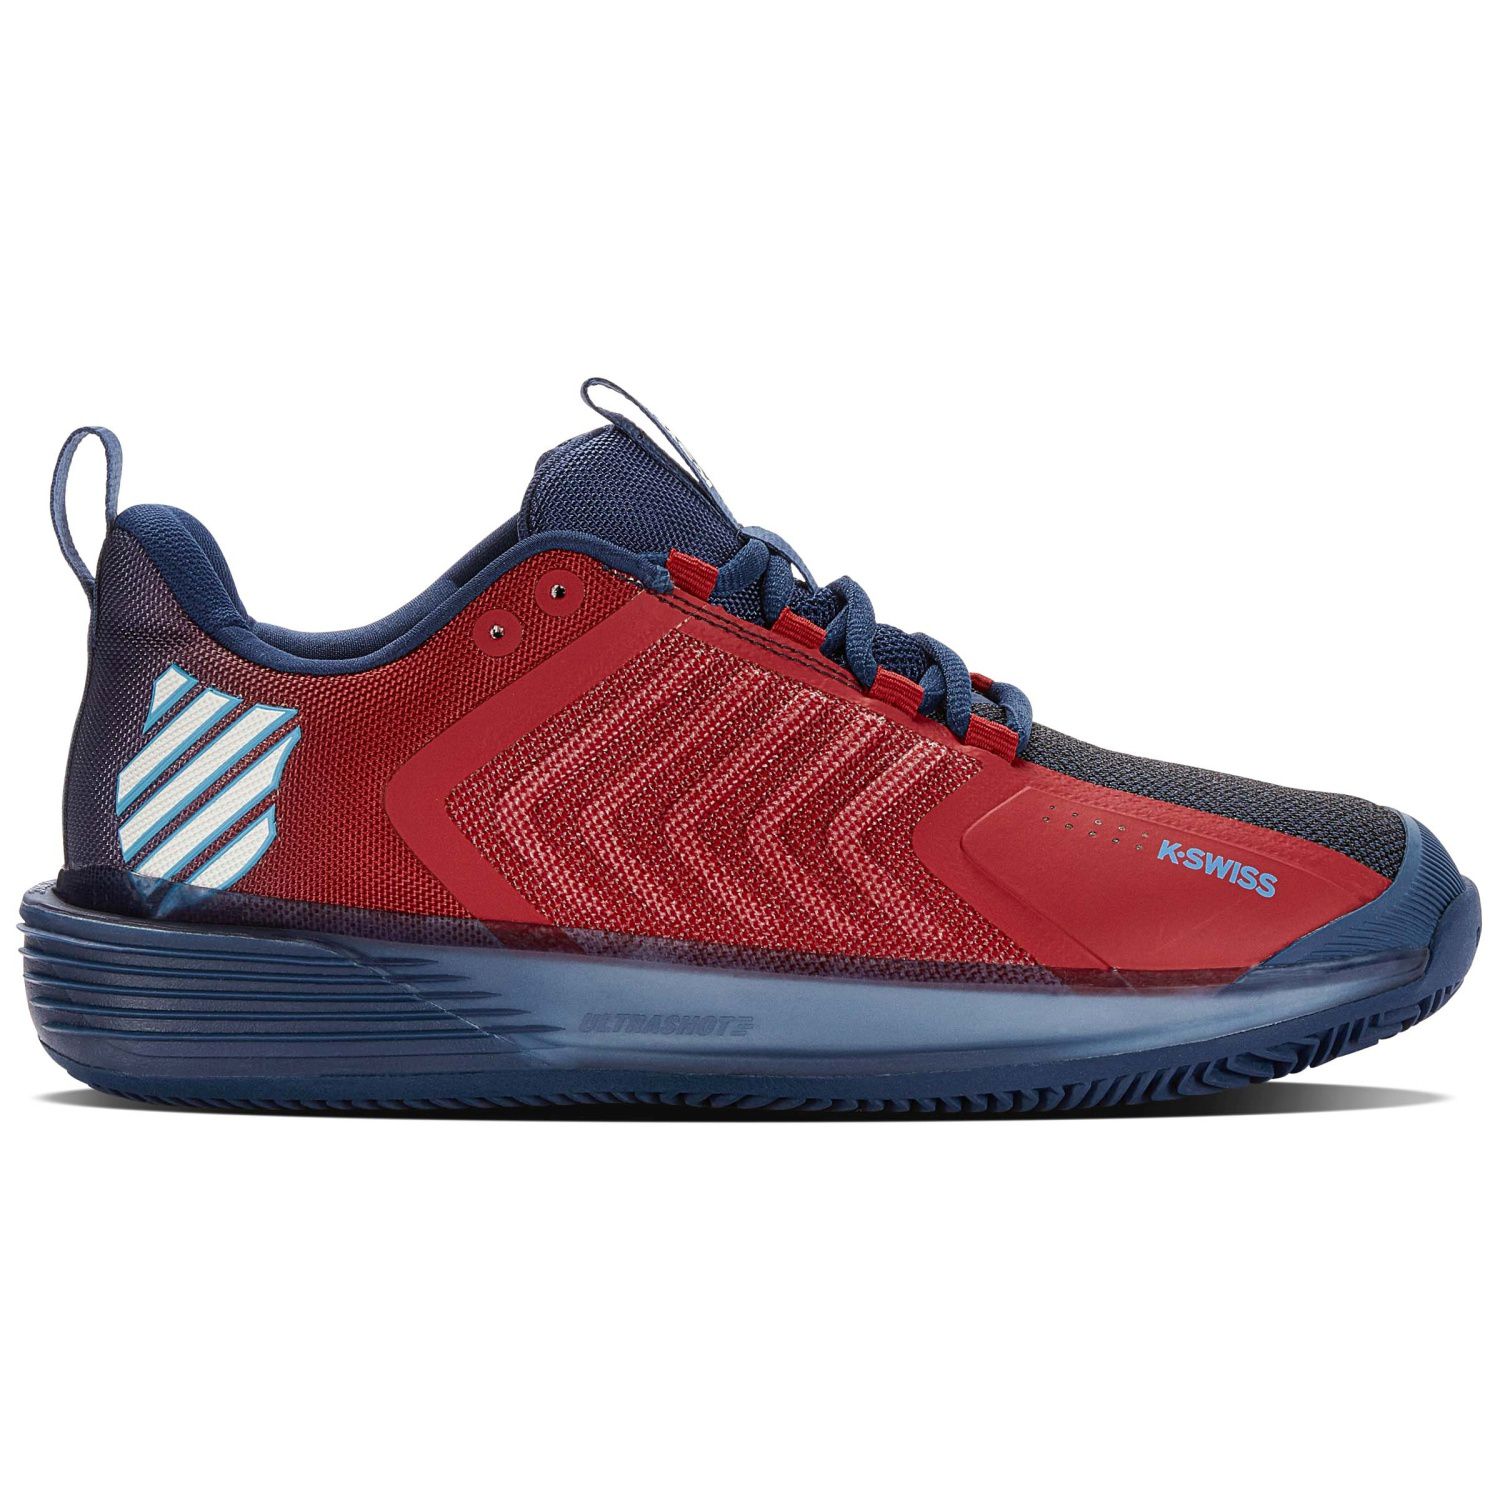 Zapatillas K-swiss Ultrashot 3 Hb - rojo-azul-marino - 